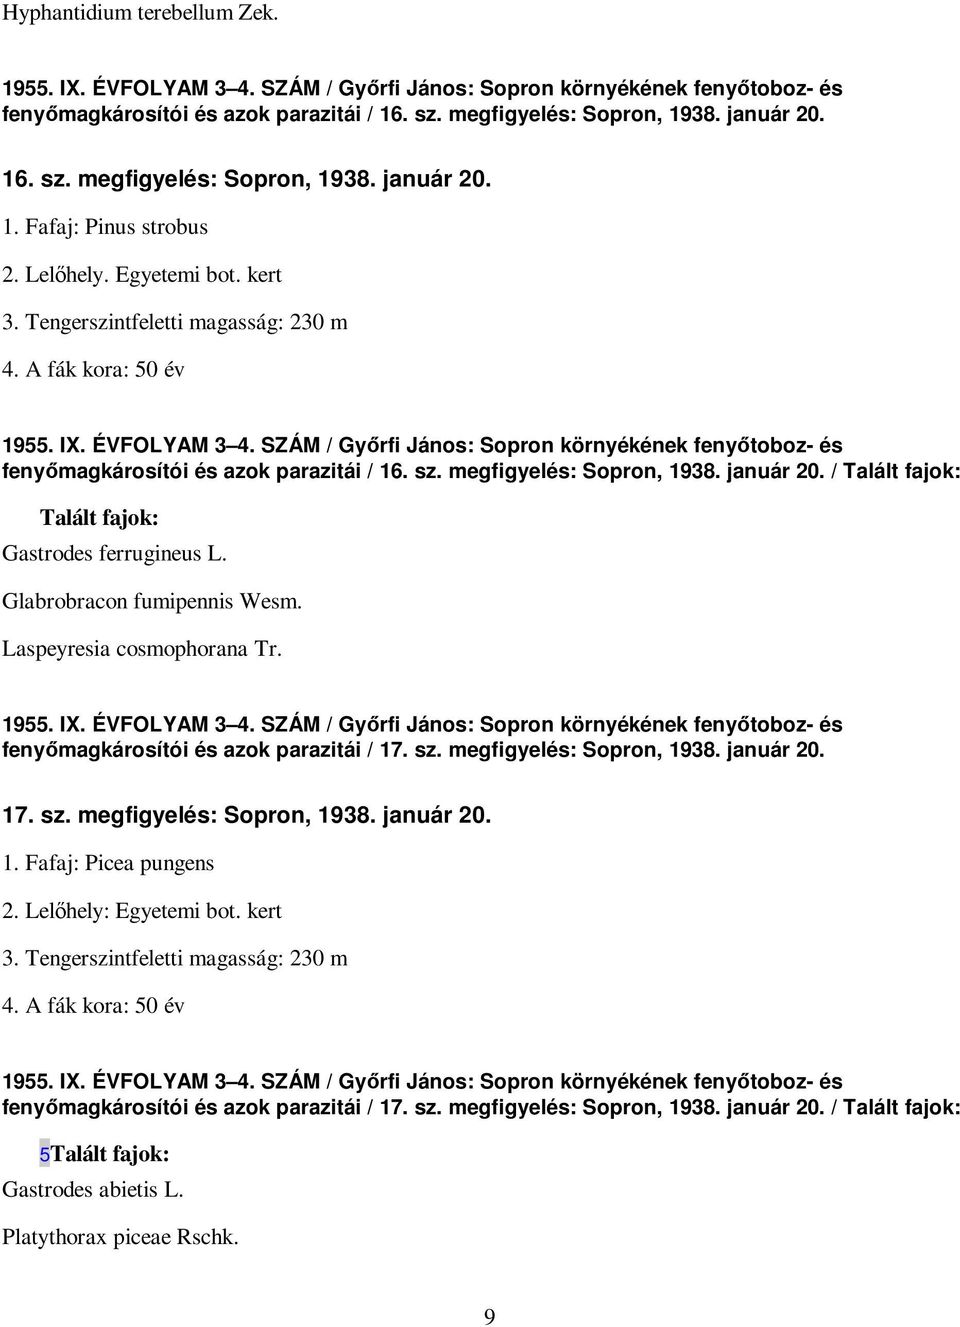 SZÁM / Gyırfi János: Sopron környékének fenyıtoboz- és fenyımagkárosítói és azok parazitái / 16. sz. megfigyelés: Sopron, 1938. január 20. / Talált fajok: Talált fajok: Gastrodes ferrugineus L.